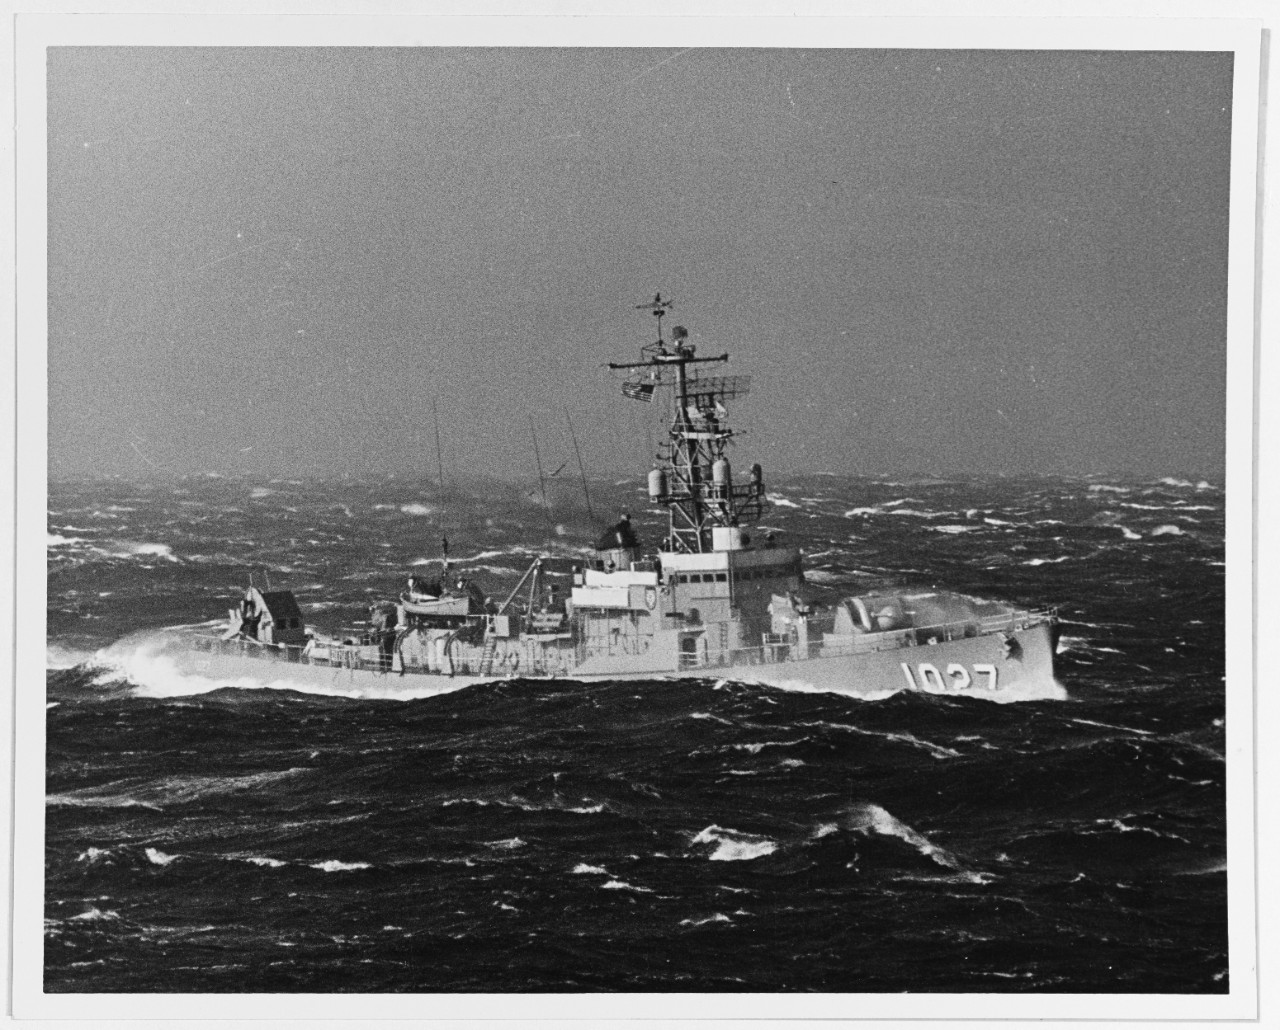 USS JOHN WILLIS (DE-1027)